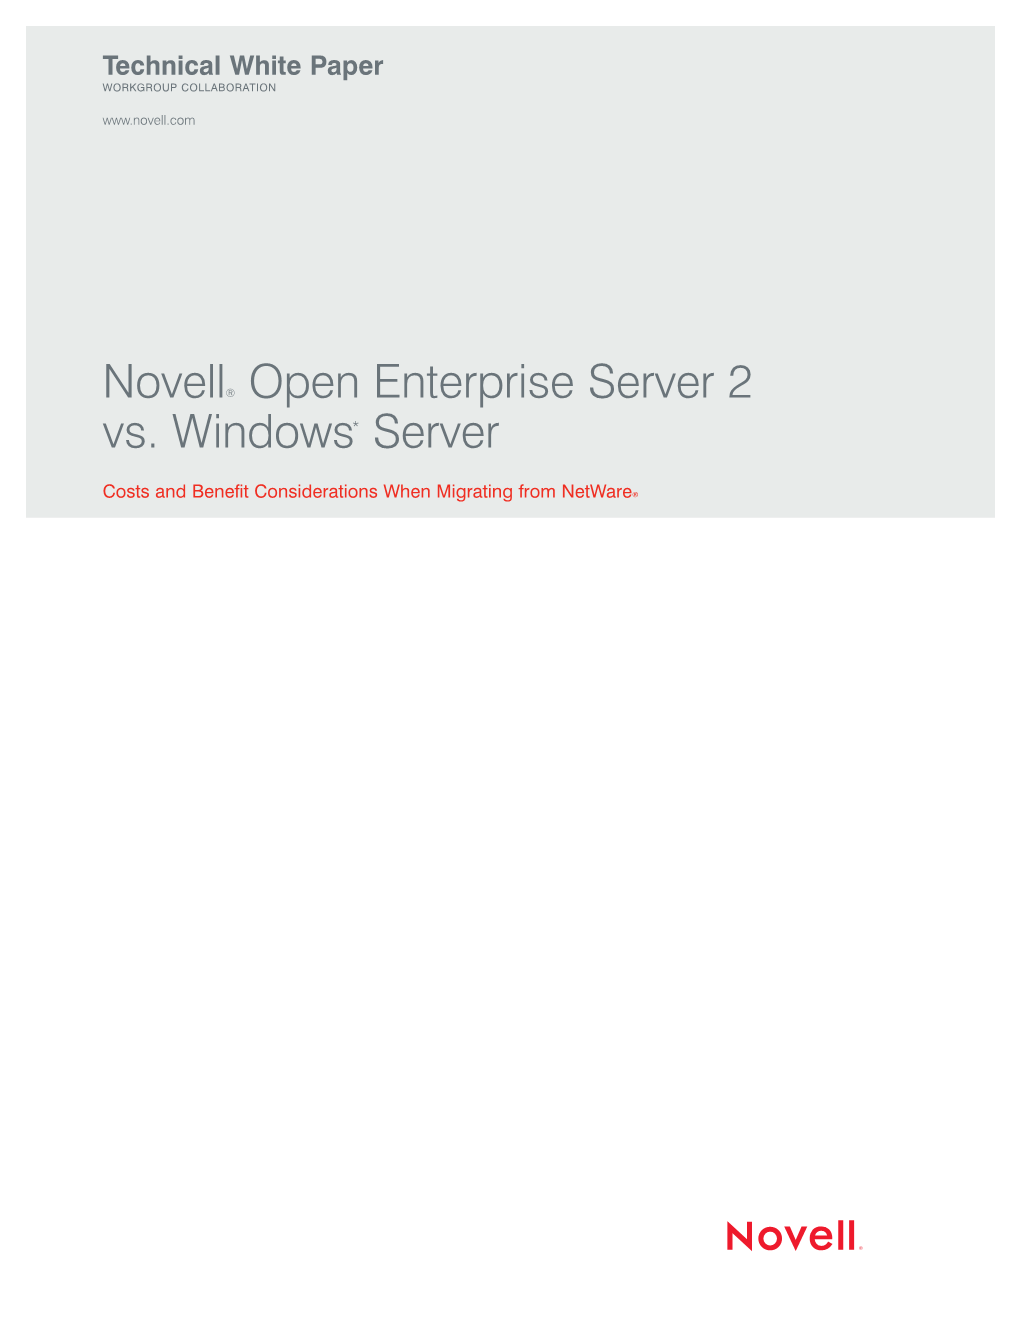 Novell® Open Enterprise Server 2 Vs. Windows* Server